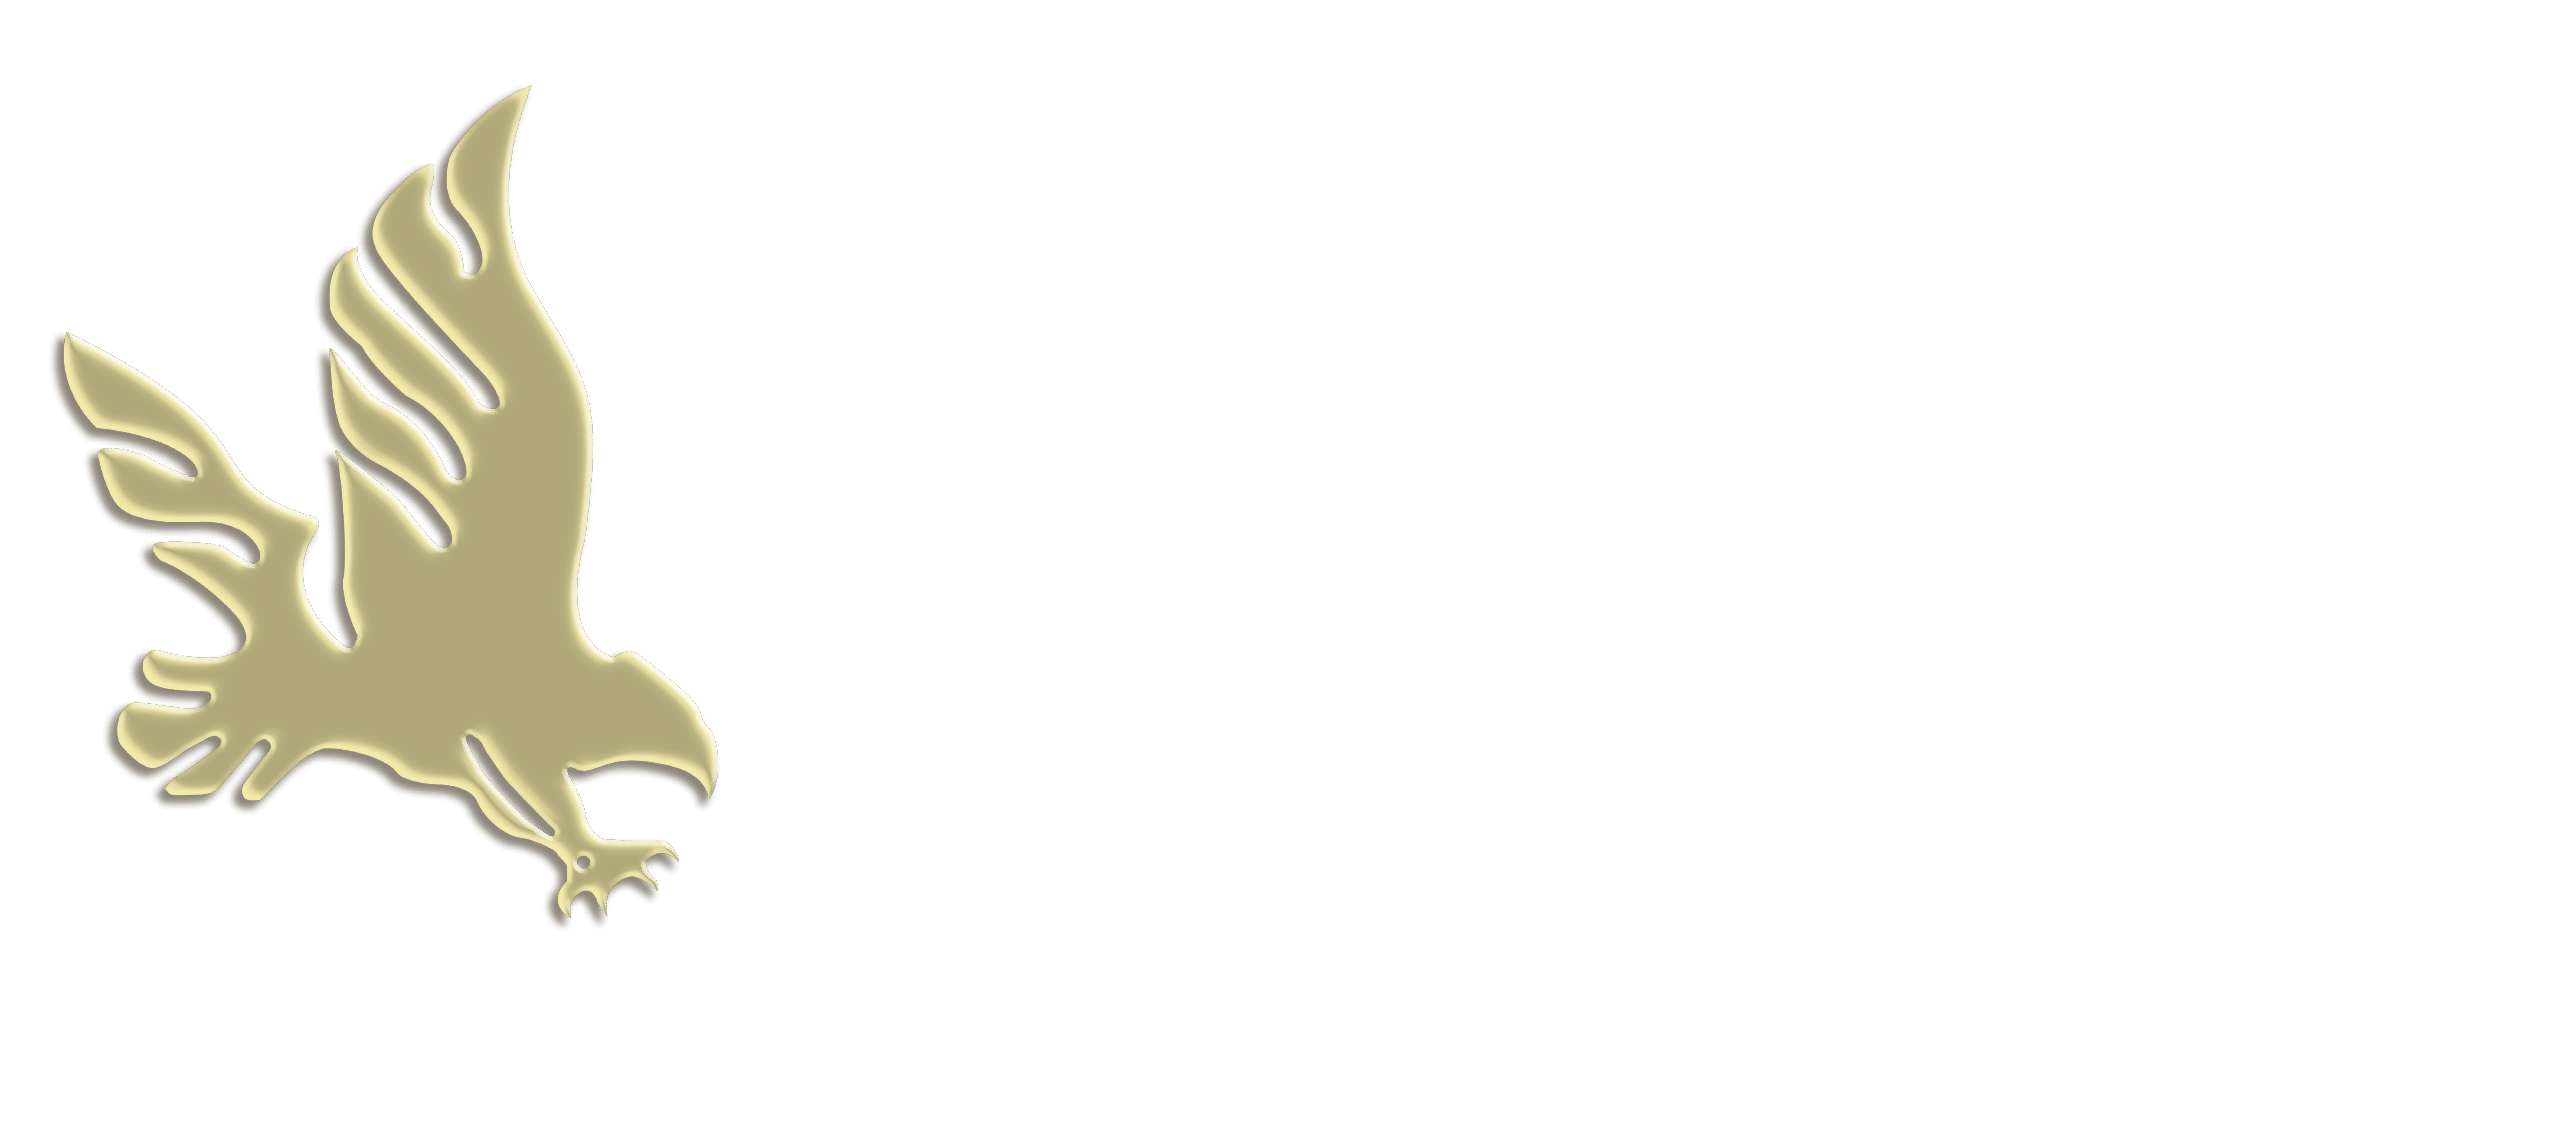 Goldhawk International